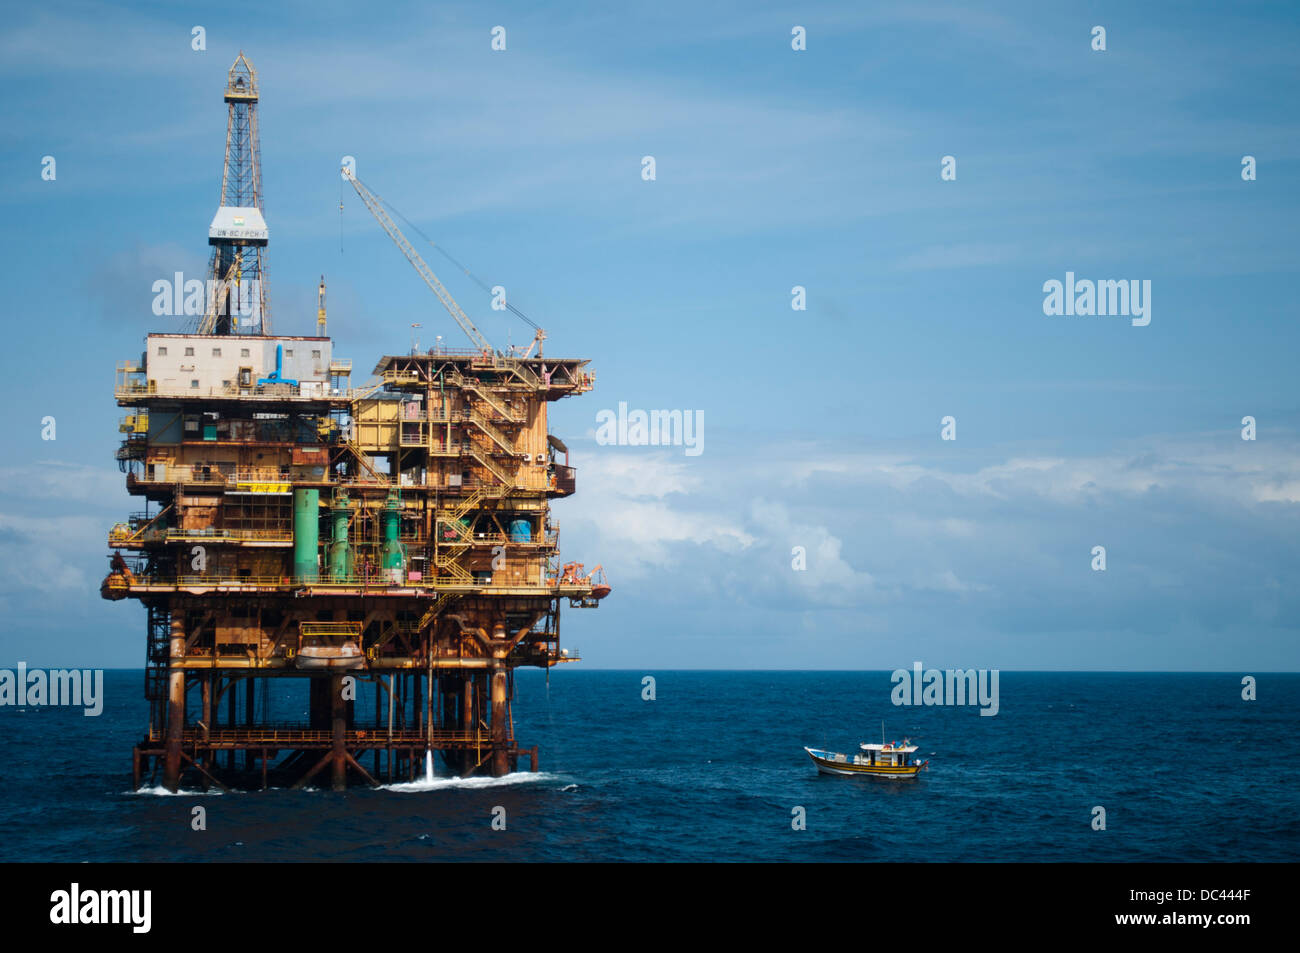 Petit bateau de pêche amarré sur plate-forme pétrolière offshore PCH-01, travaillant pour Petrobras, bassin de Campos, Rio de Janeiro, Brésil Banque D'Images